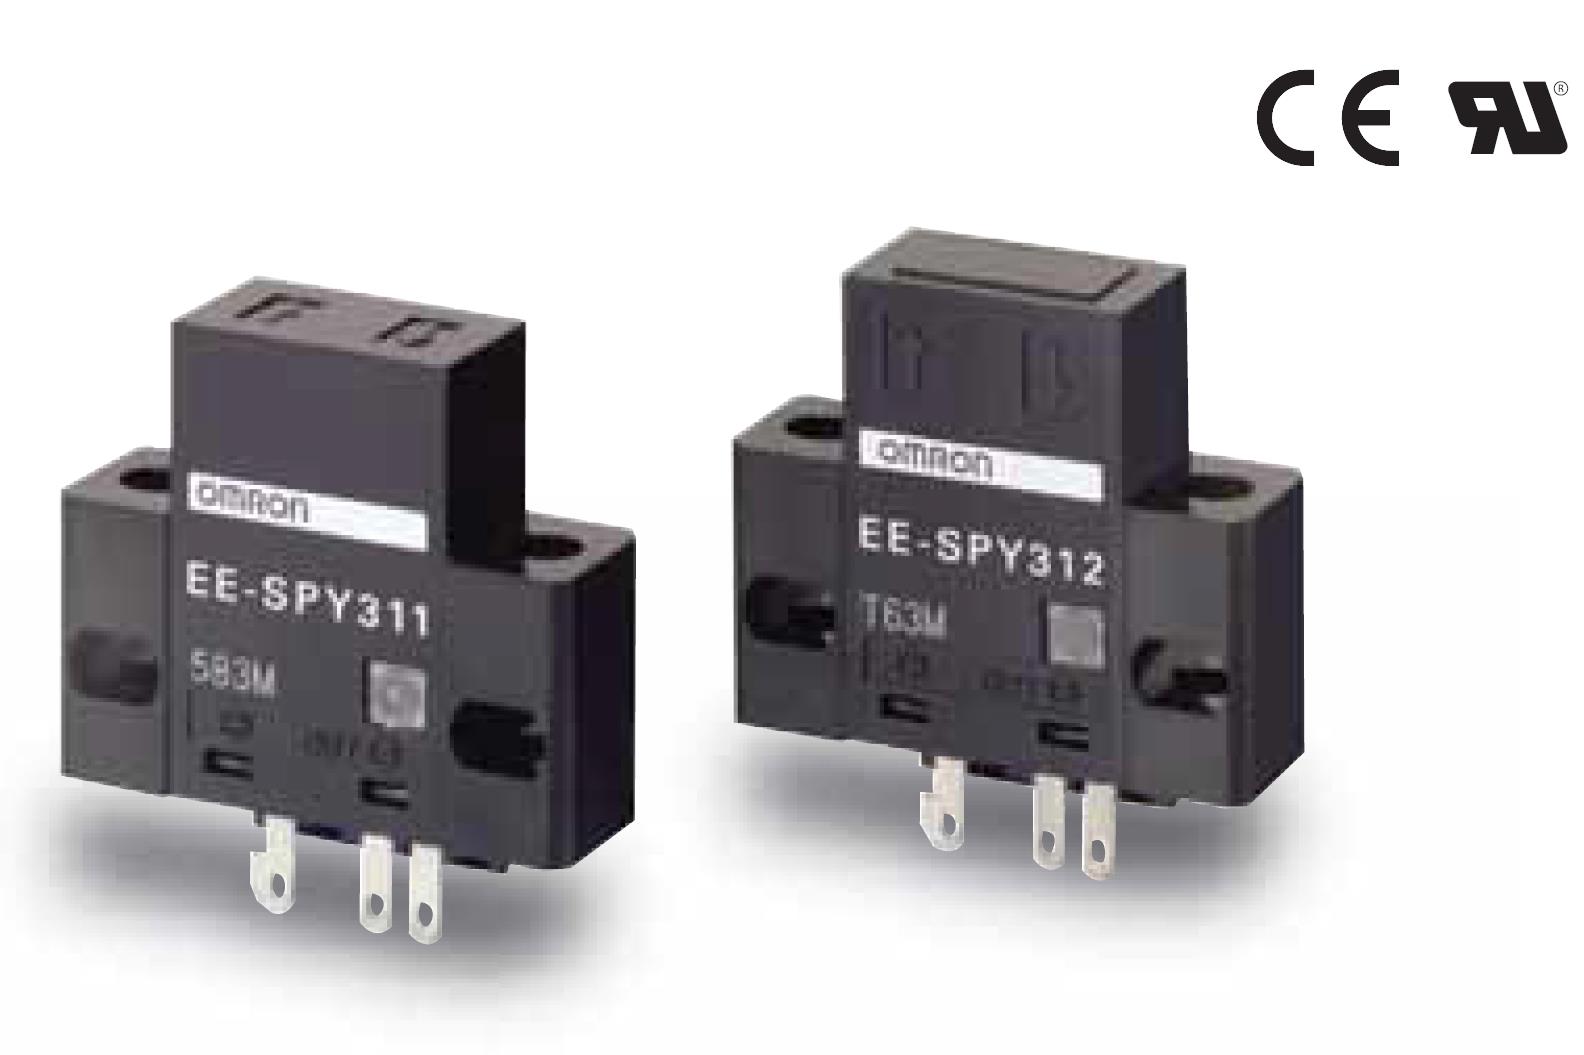 限定反射型接插件型光电传感器温度传感器是用作温控器的热感应部件
欧姆龙EE-SPY311